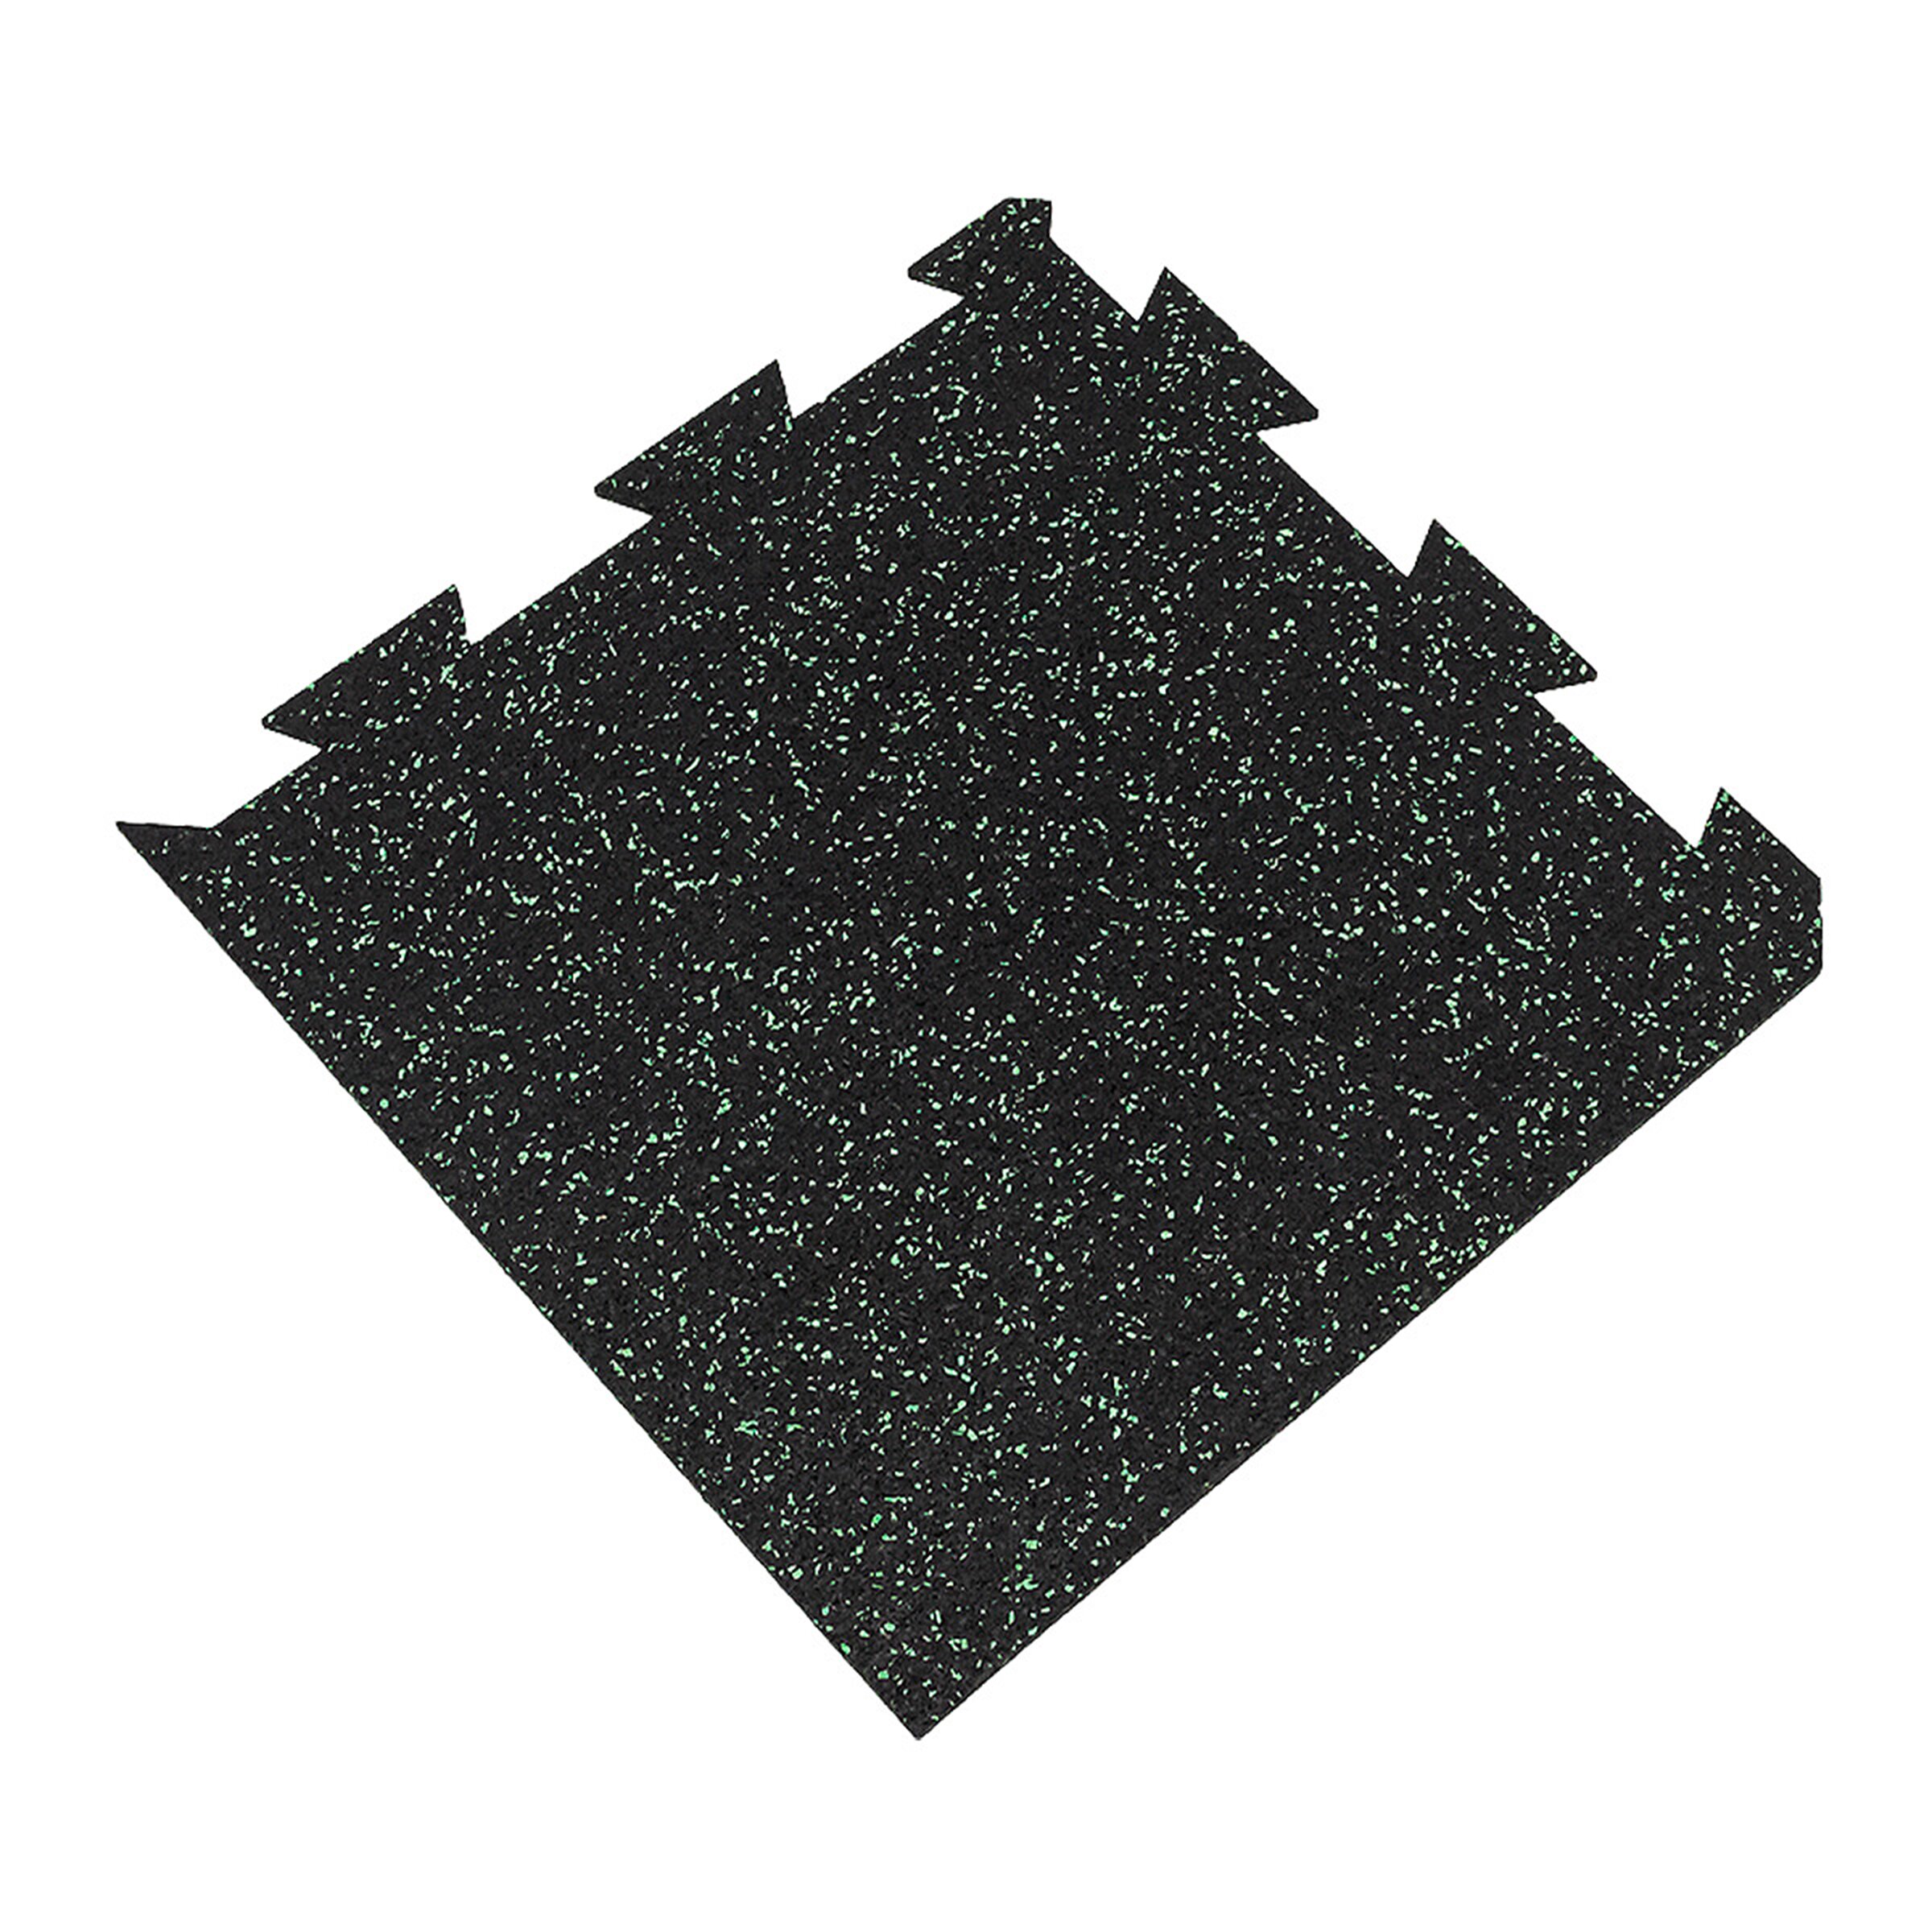 Čierno-zelená gumová modulová puzzle dlažba (roh) FLOMA FitFlo SF1050 - dĺžka 50 cm, šírka 50 cm, výška 0,8 cm